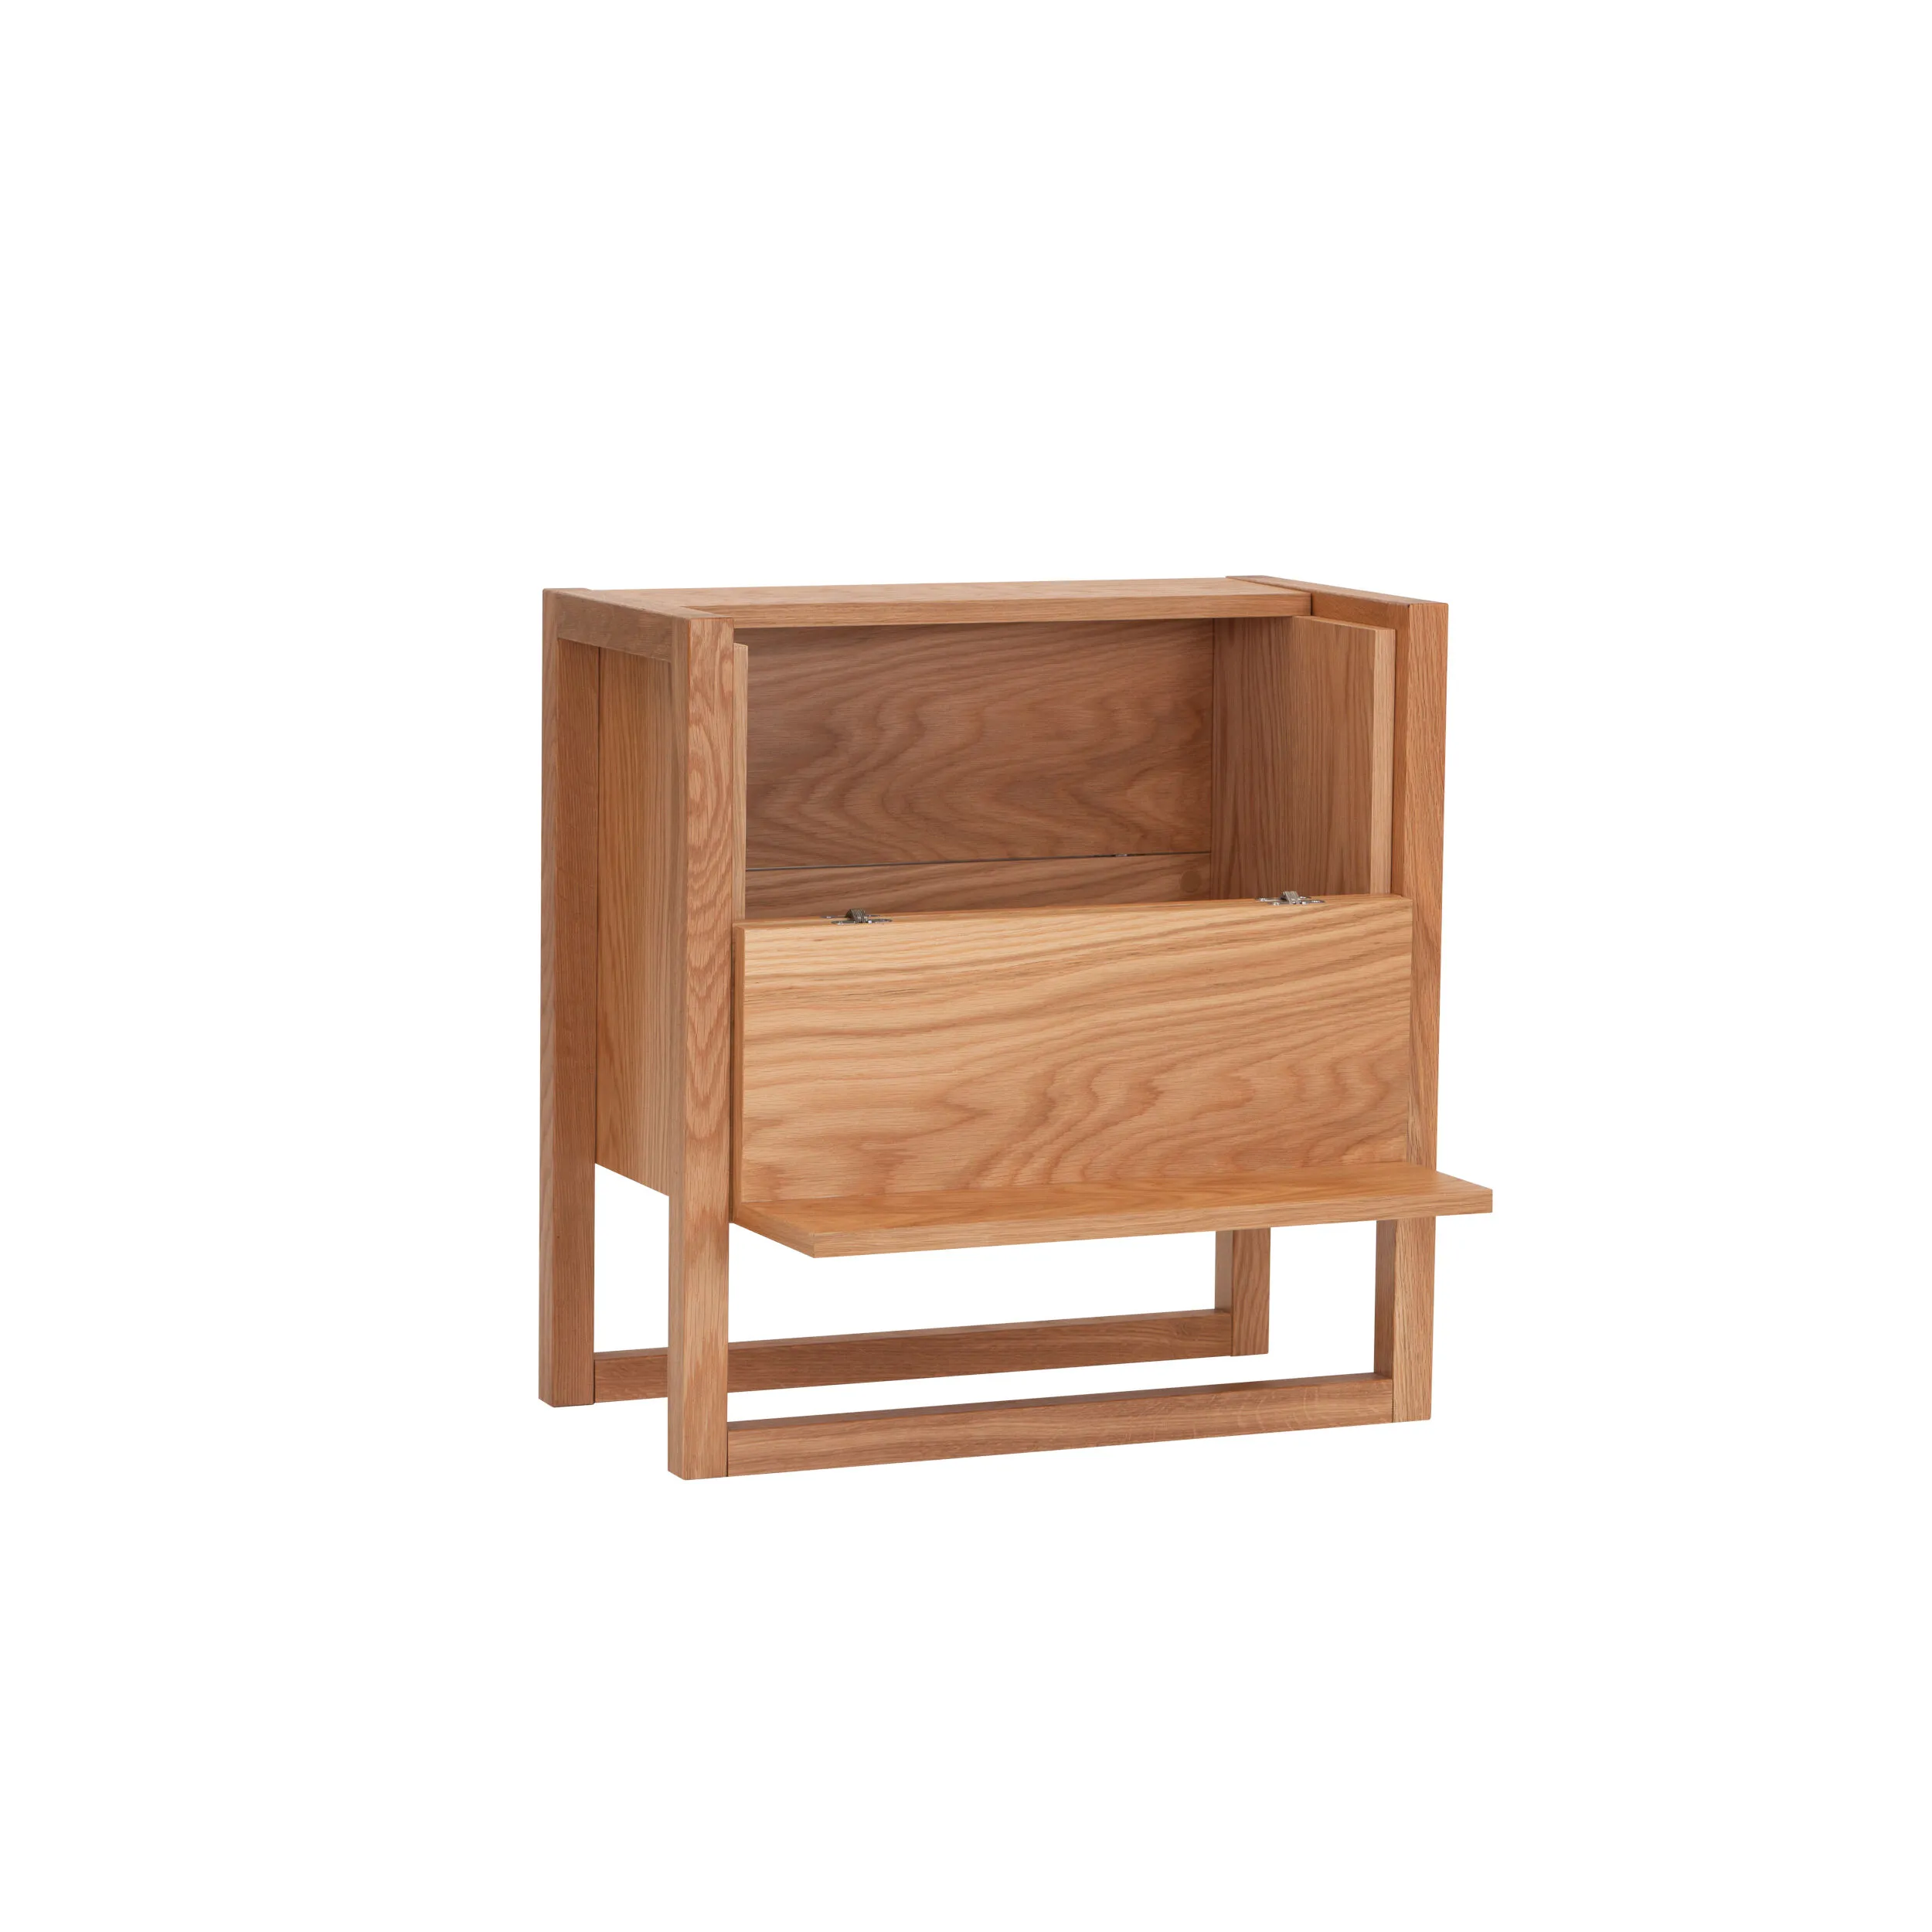 Nuovo Mini Bar in legno ingegnerizzato e massiccio, dimensioni 59 x 30 x h60 cm, peso 15 Kg, finitura legno di quercia